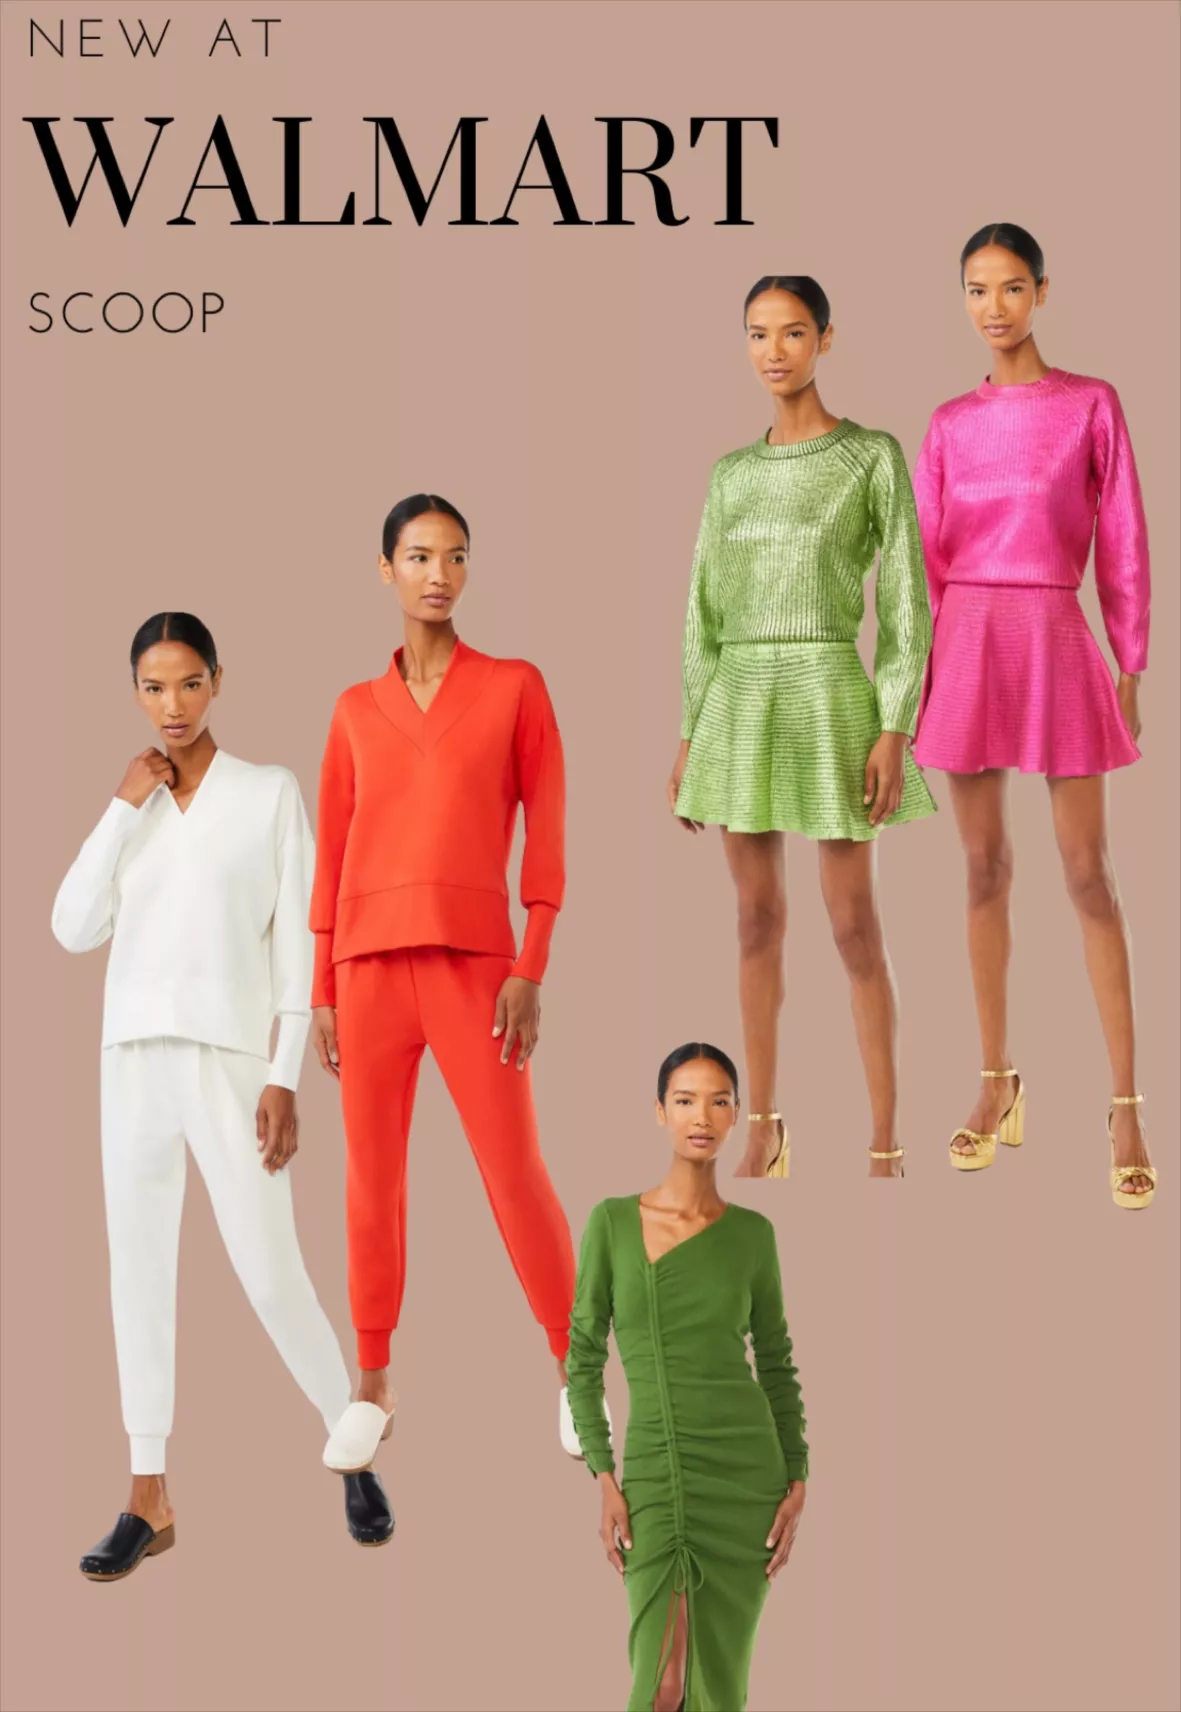 Scoop Women's Scuba Knit Trouser … curated on LTK